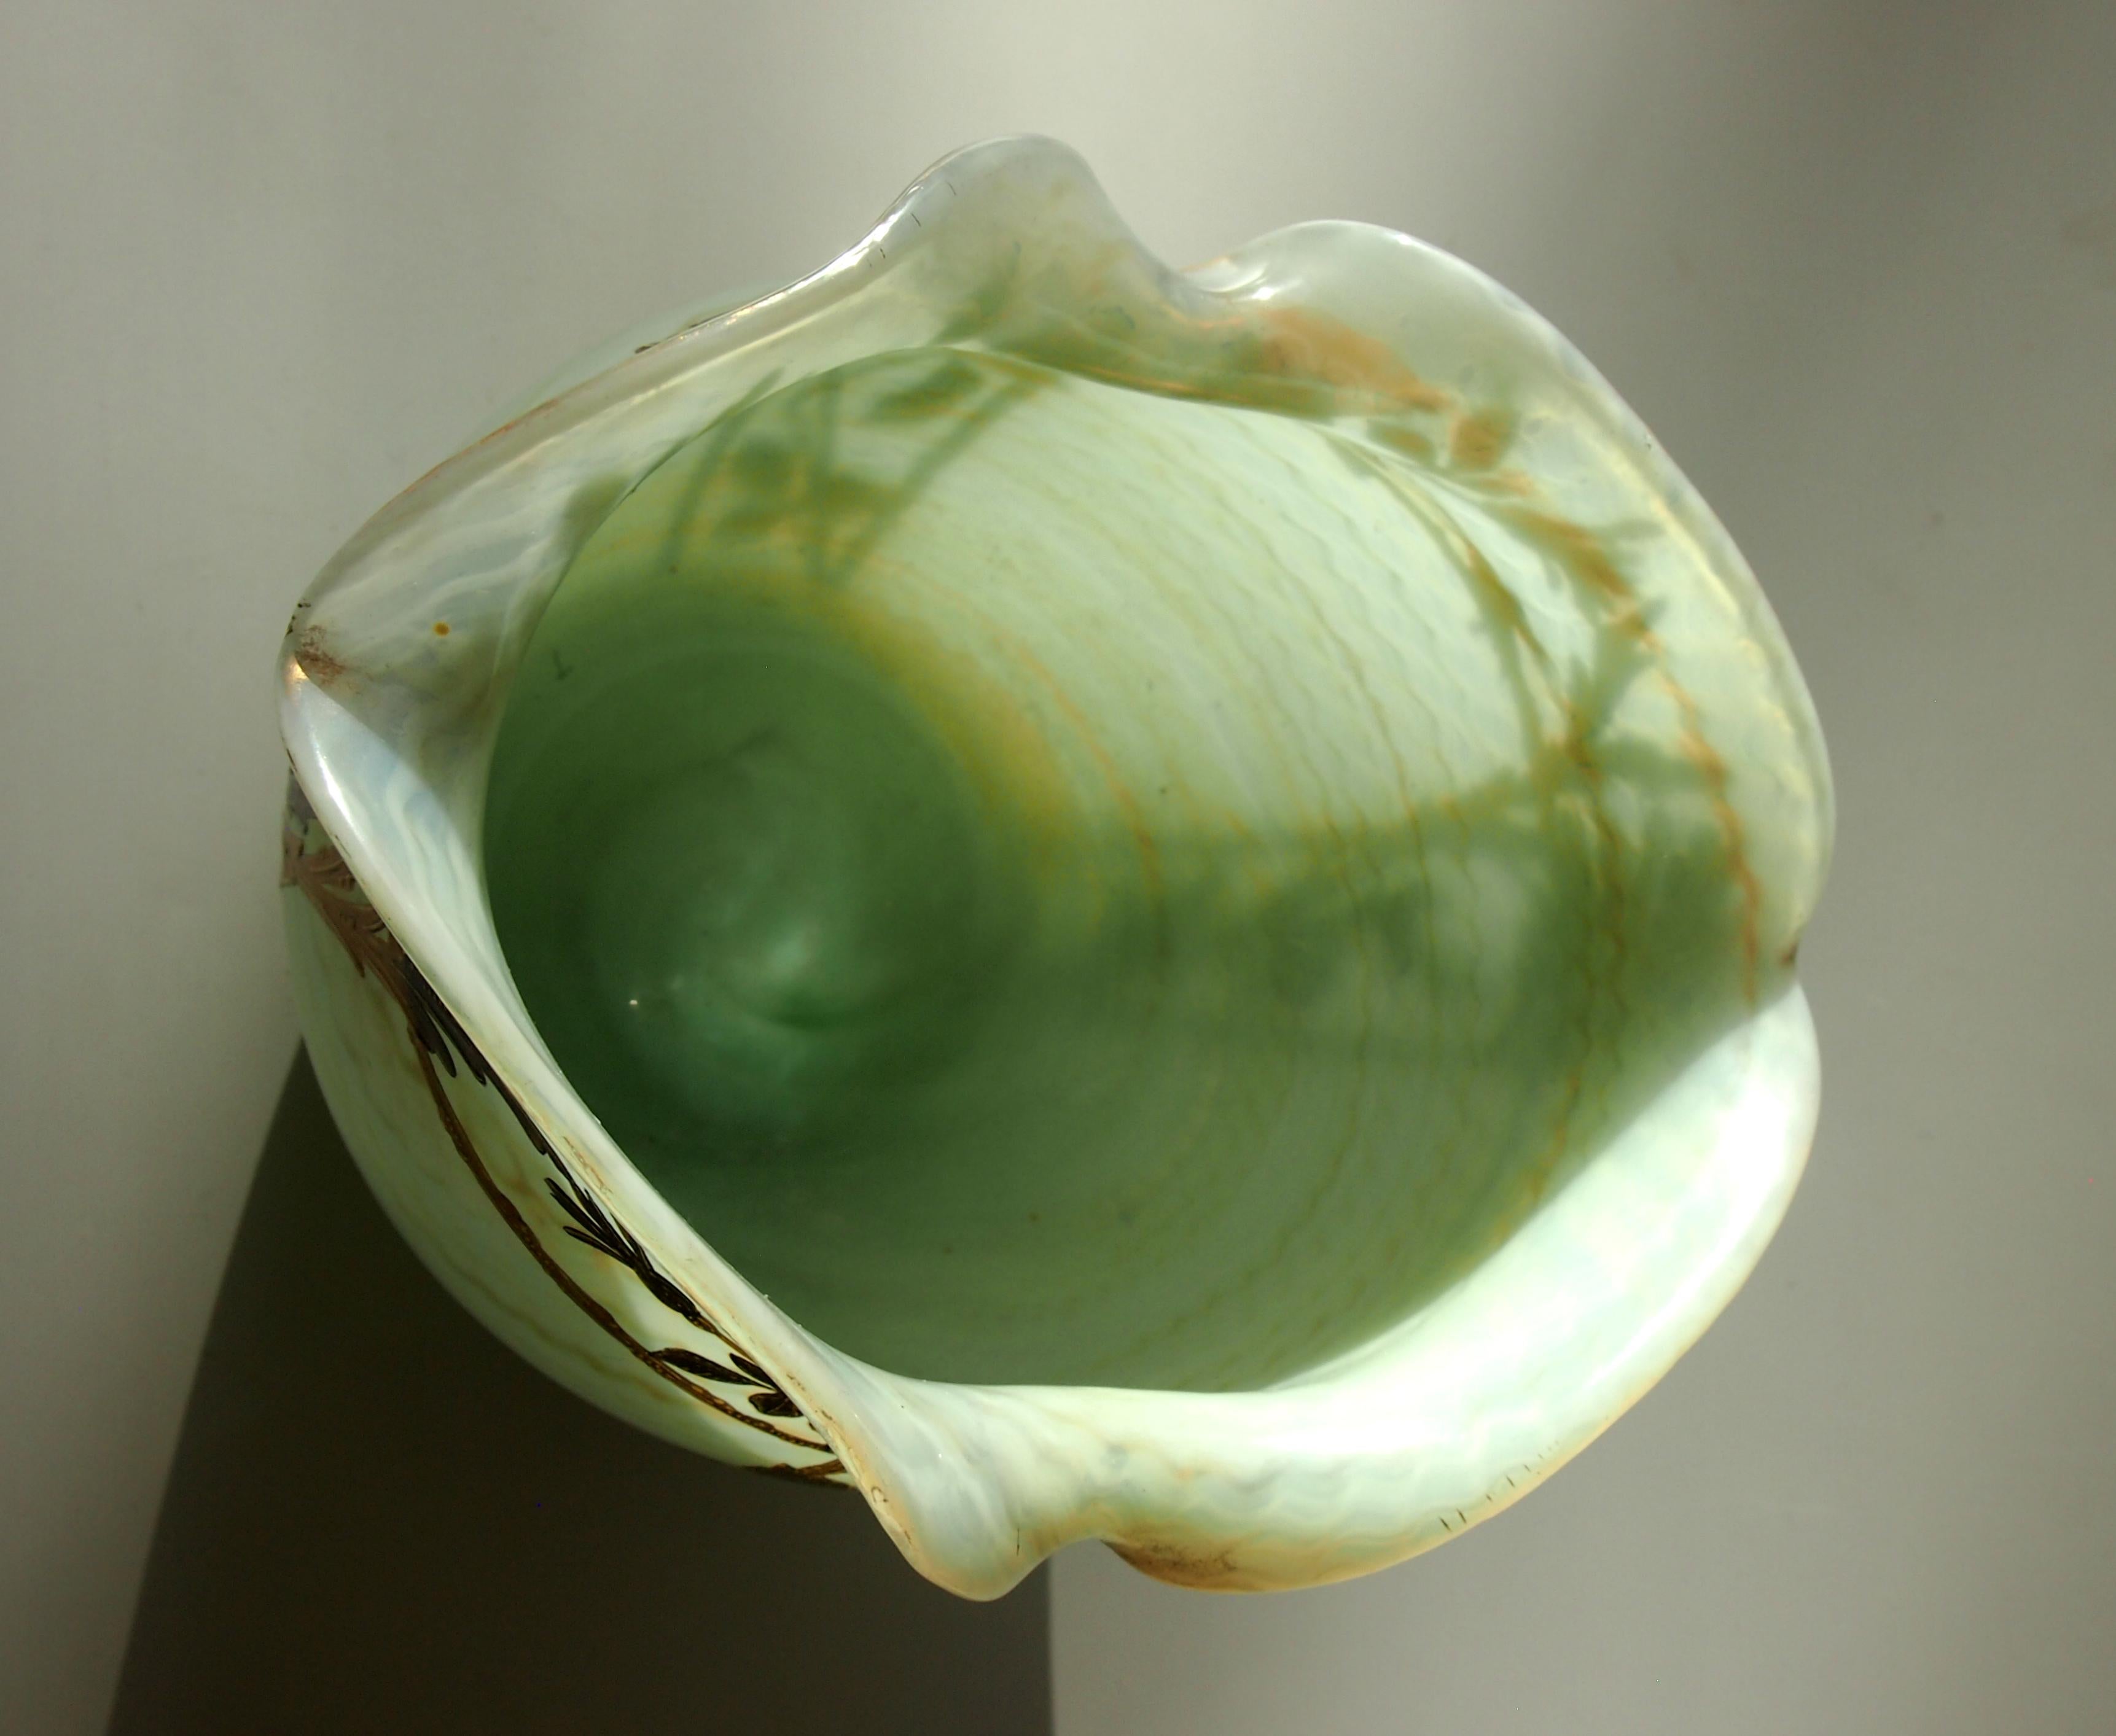 Late 19th Century Bohemian Art Nouveau Harrach Glass Marbled Green Vase circa 1898 for A. Rub